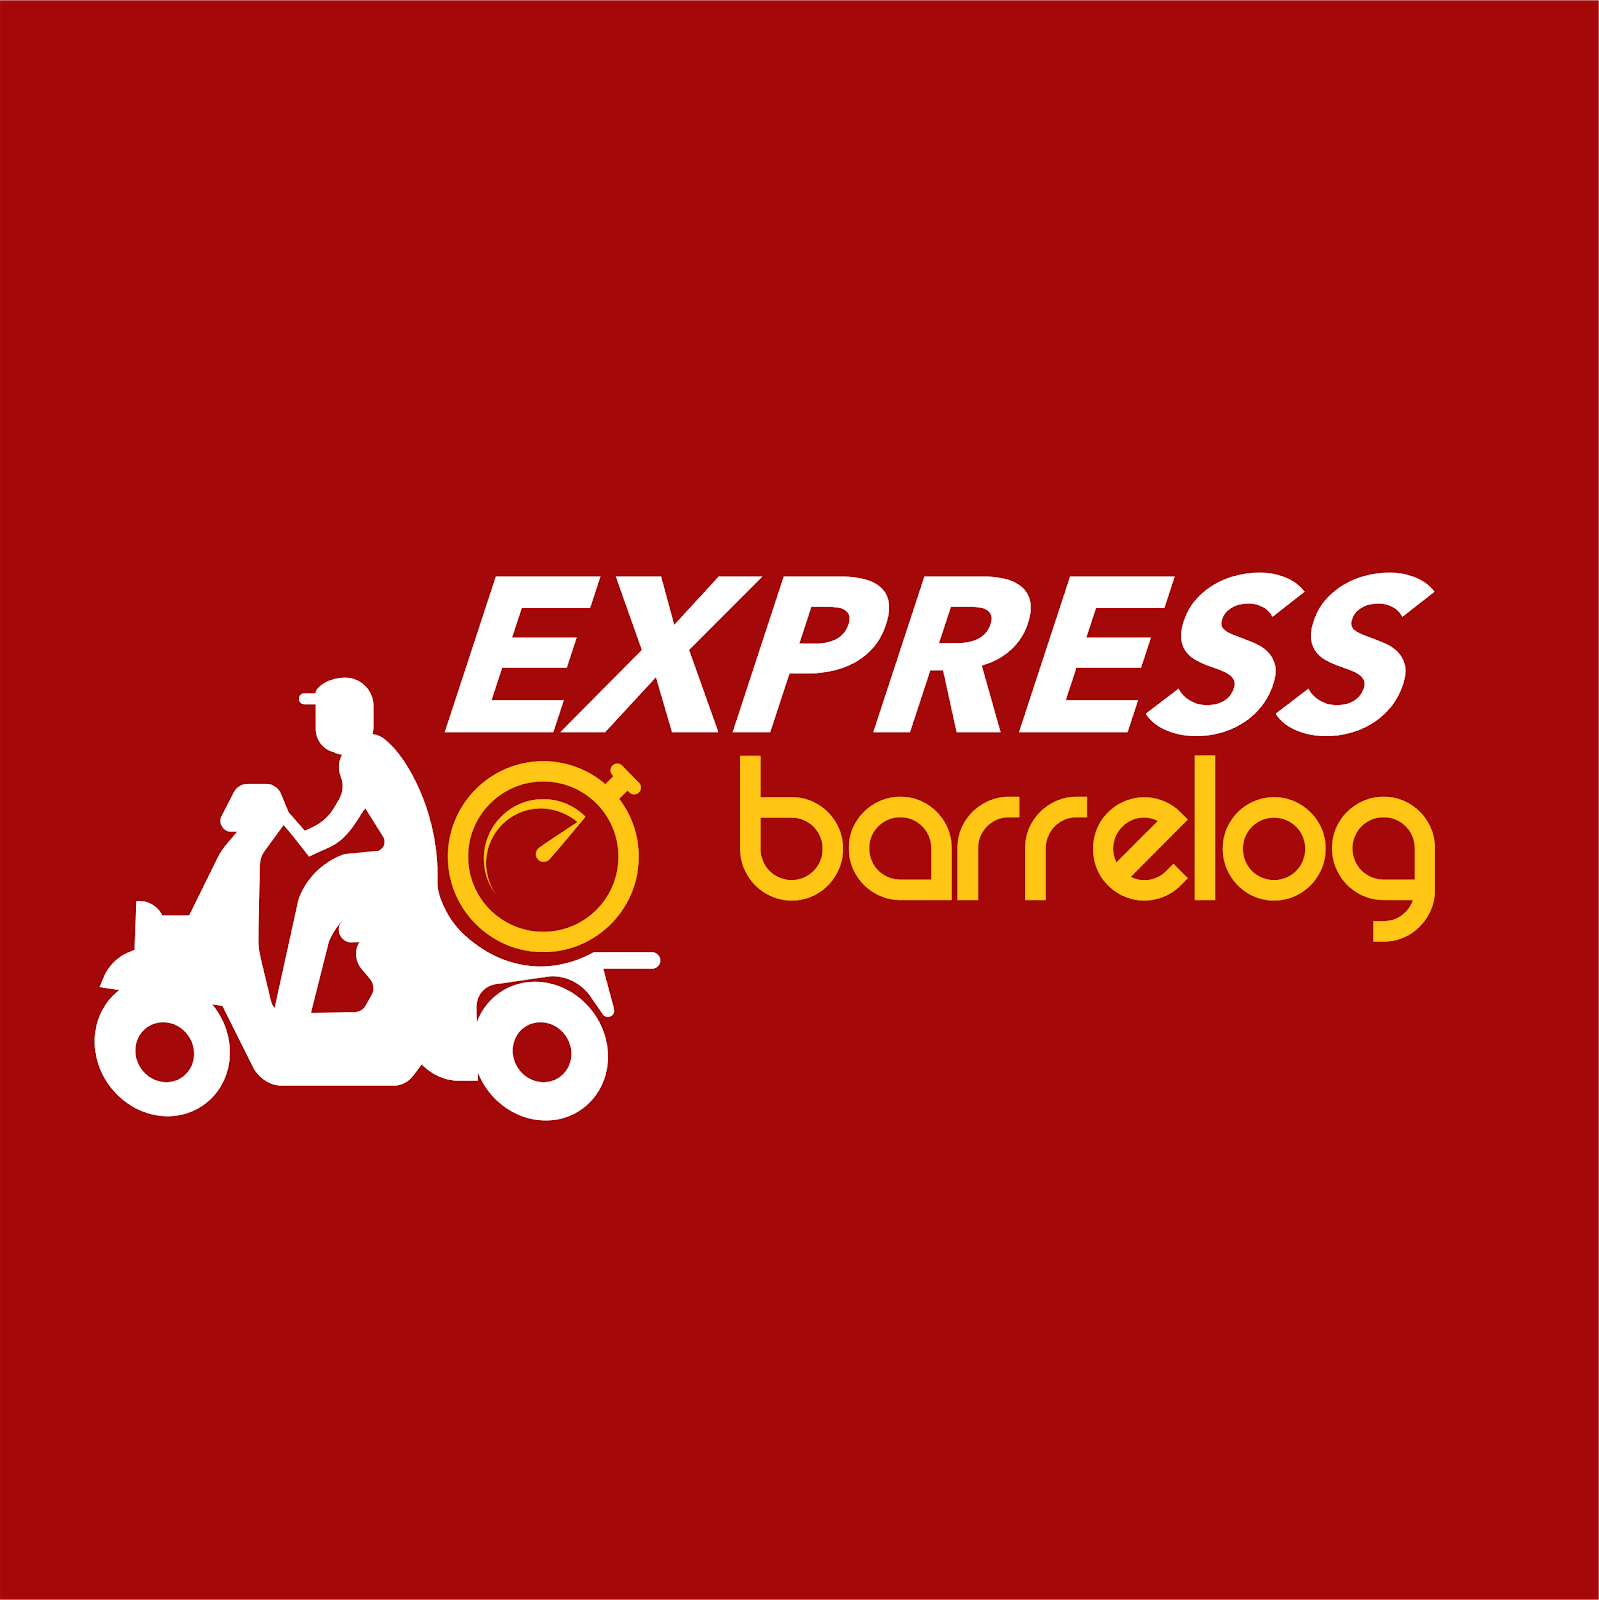 Barrelog Express (17) 98816 1125                            